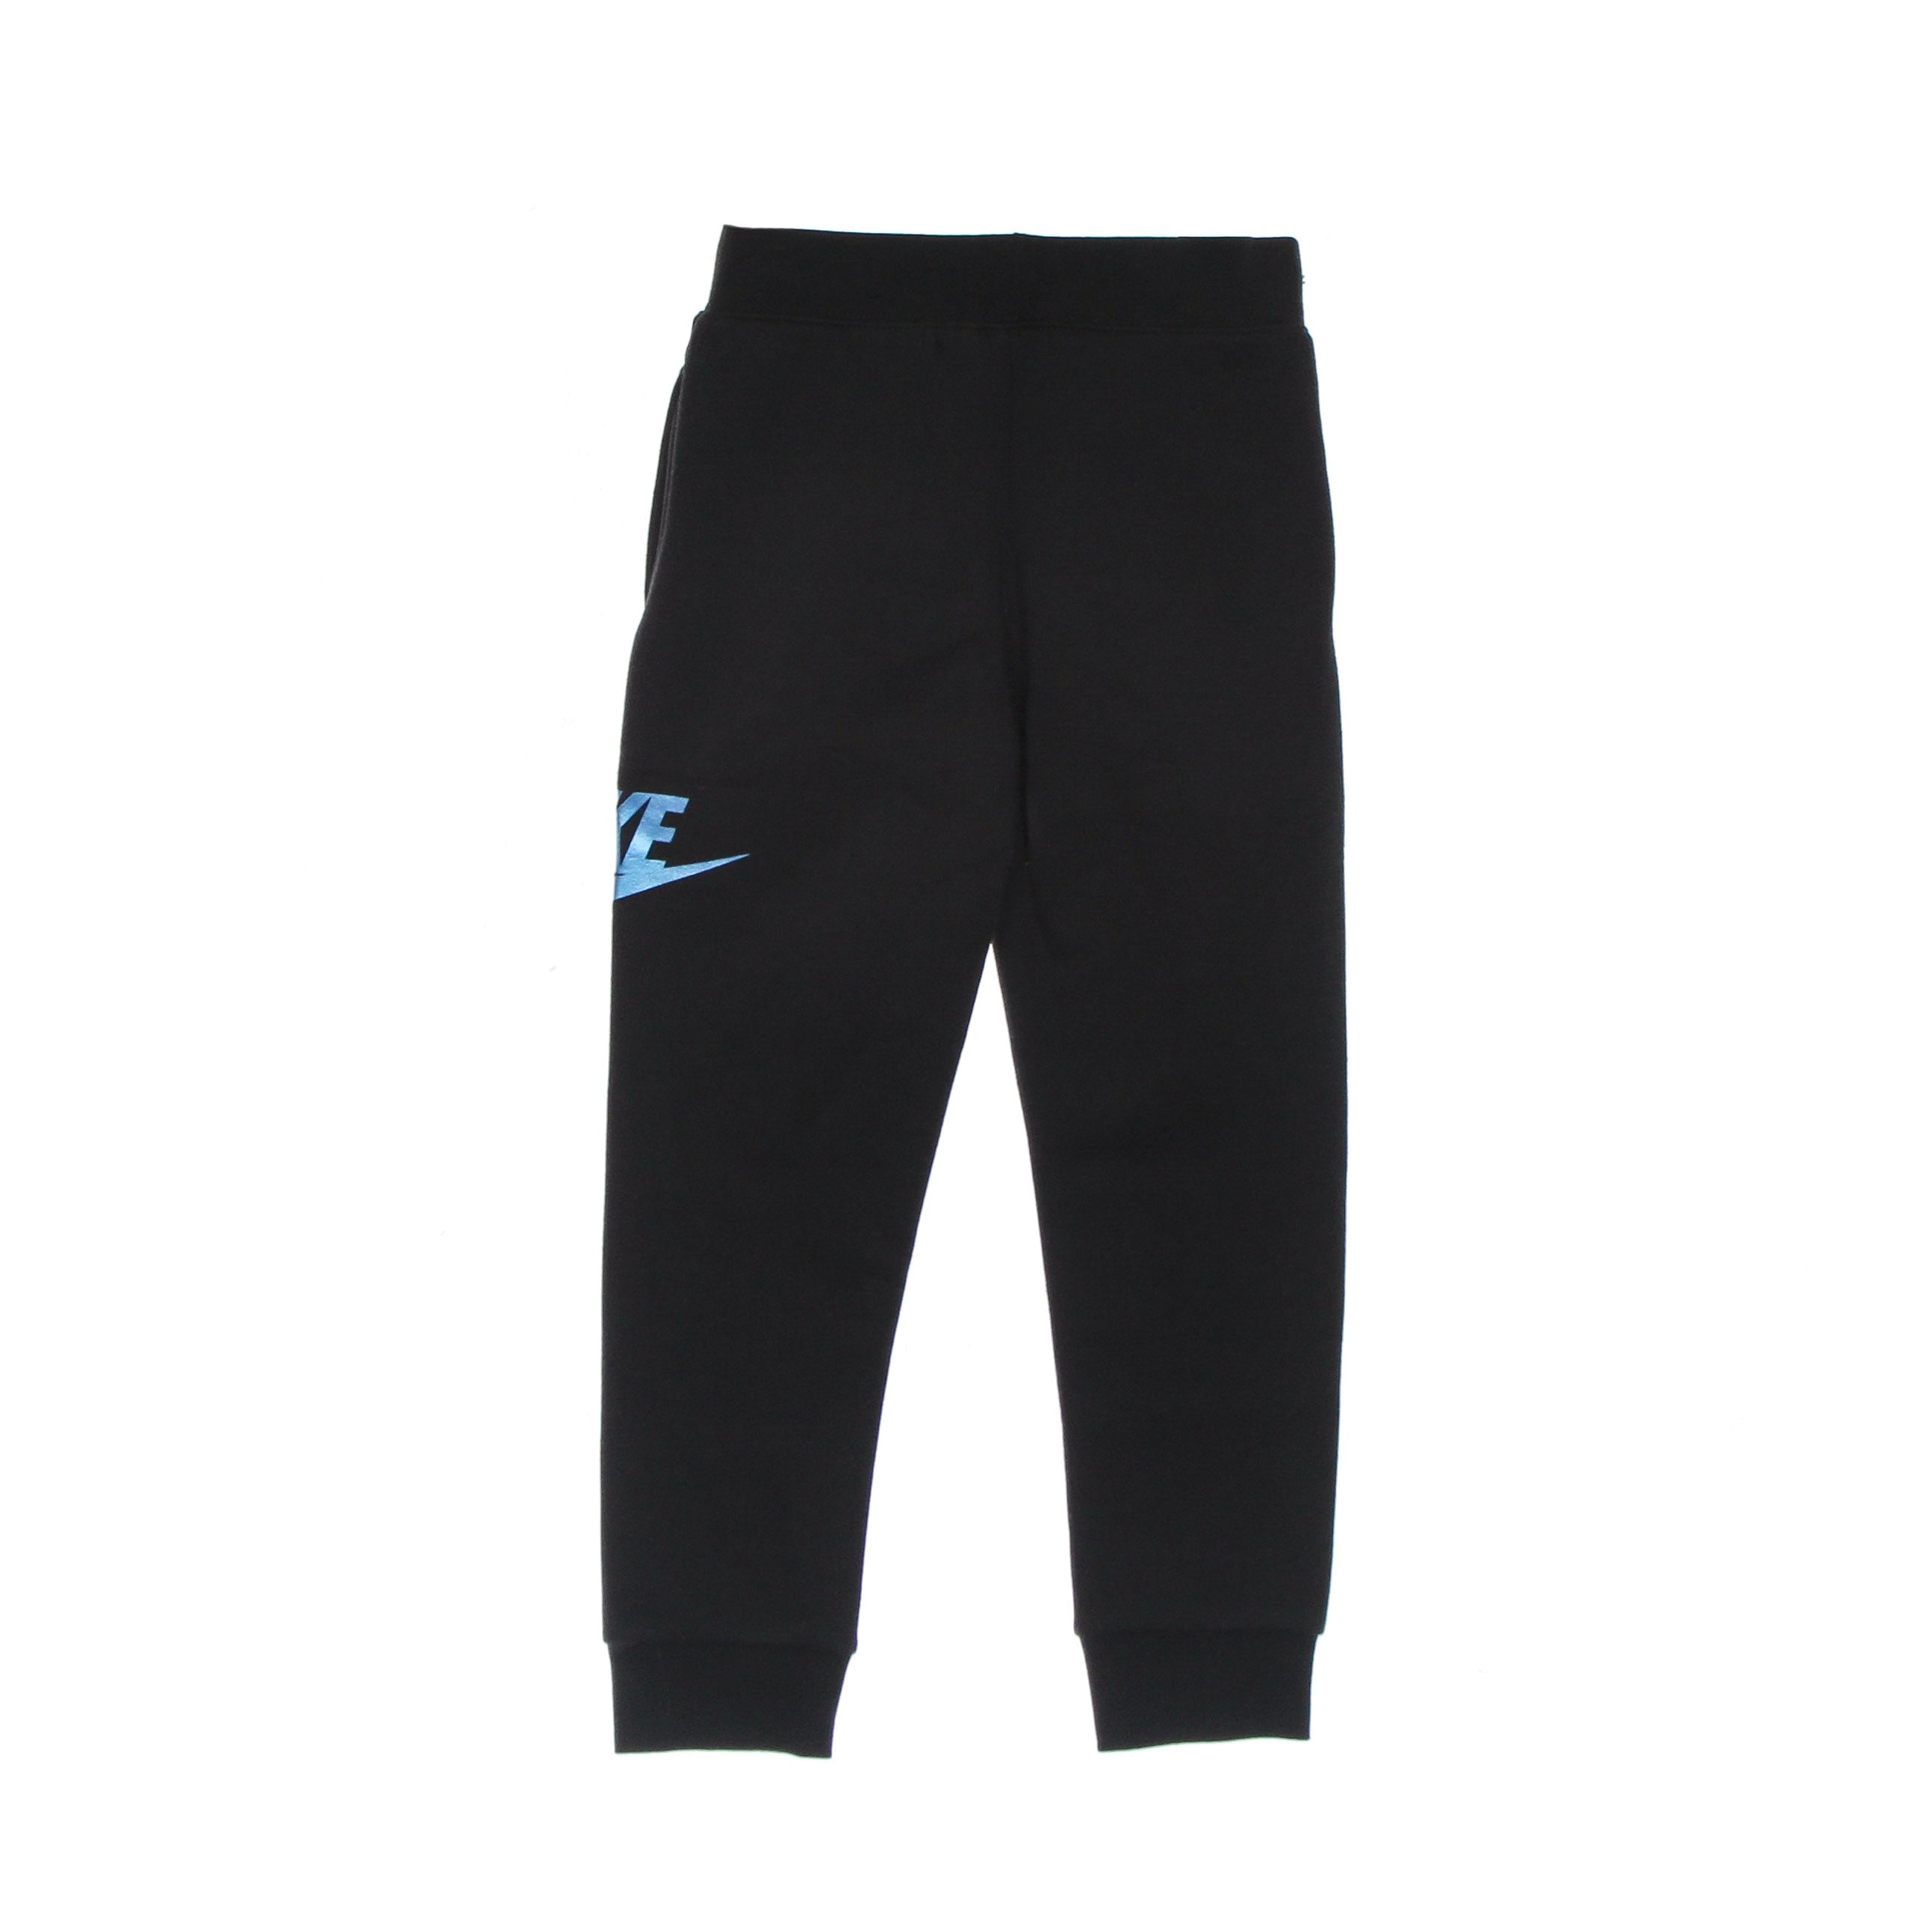 Nike, Pantalone Tuta Felpato Bambino Metallic Hybrid Fleece Pant, 